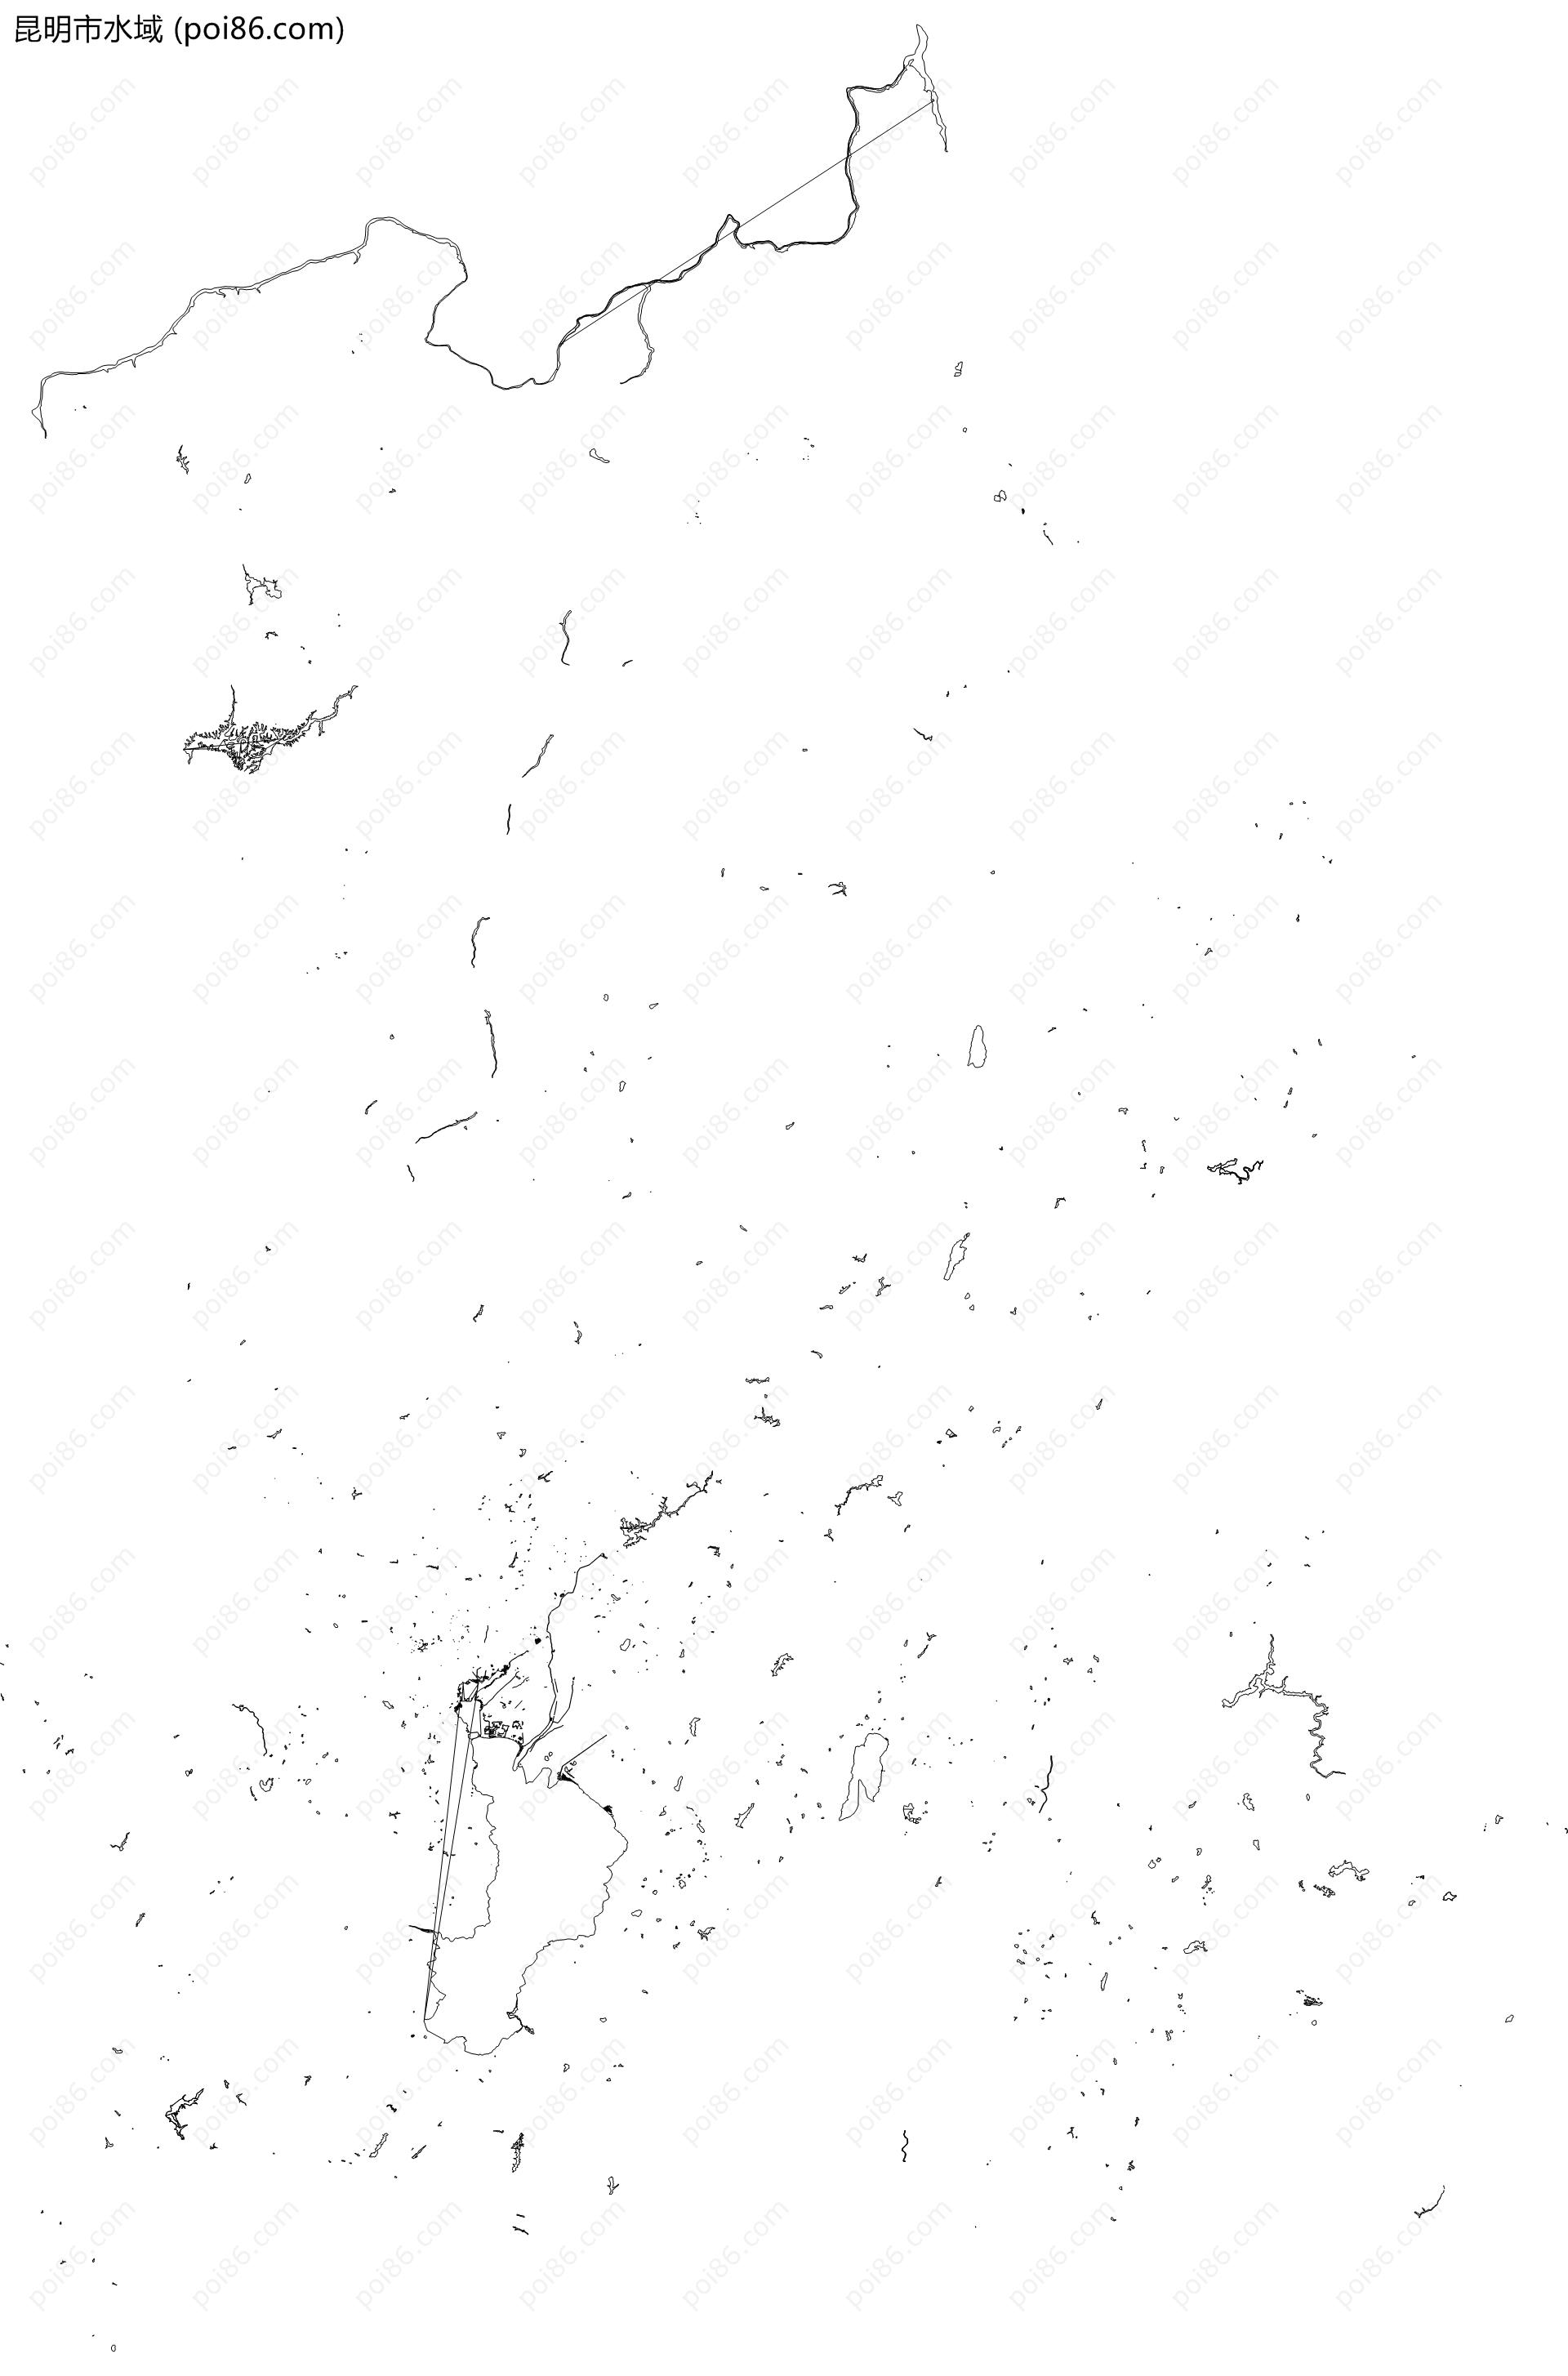 昆明市水域地图